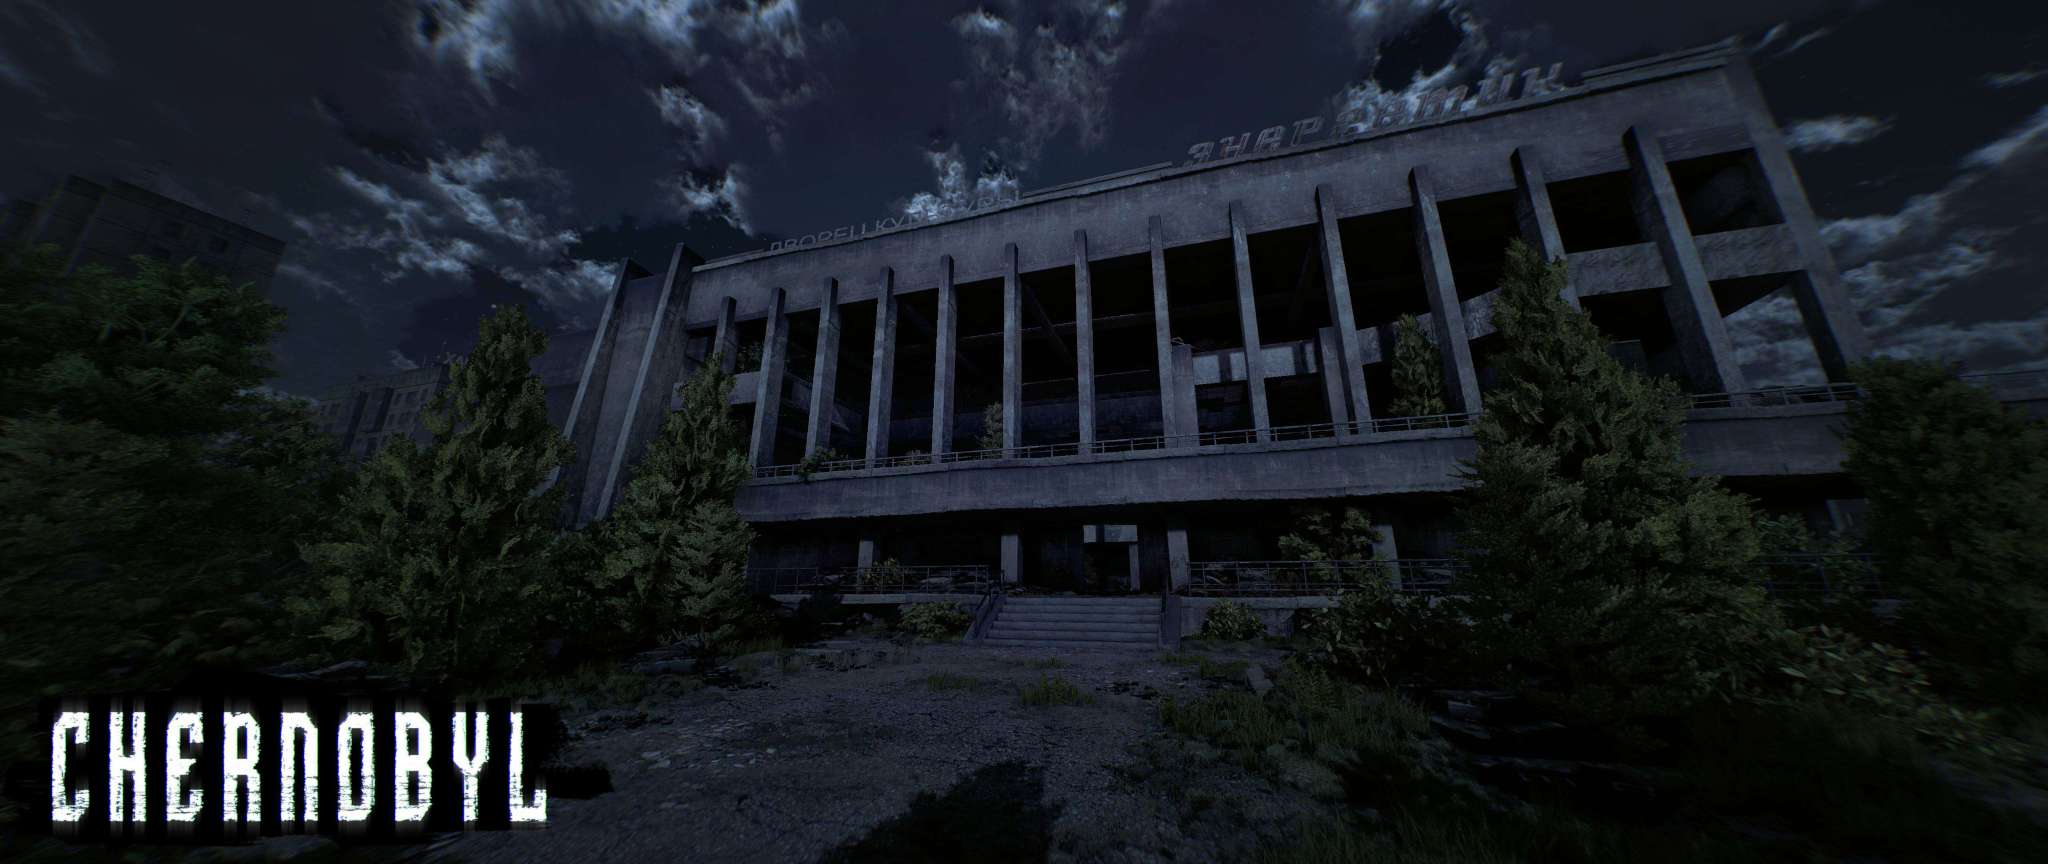 ESCAPE ROOM VR Chernobyl, se solo potessimo cambiare il passato